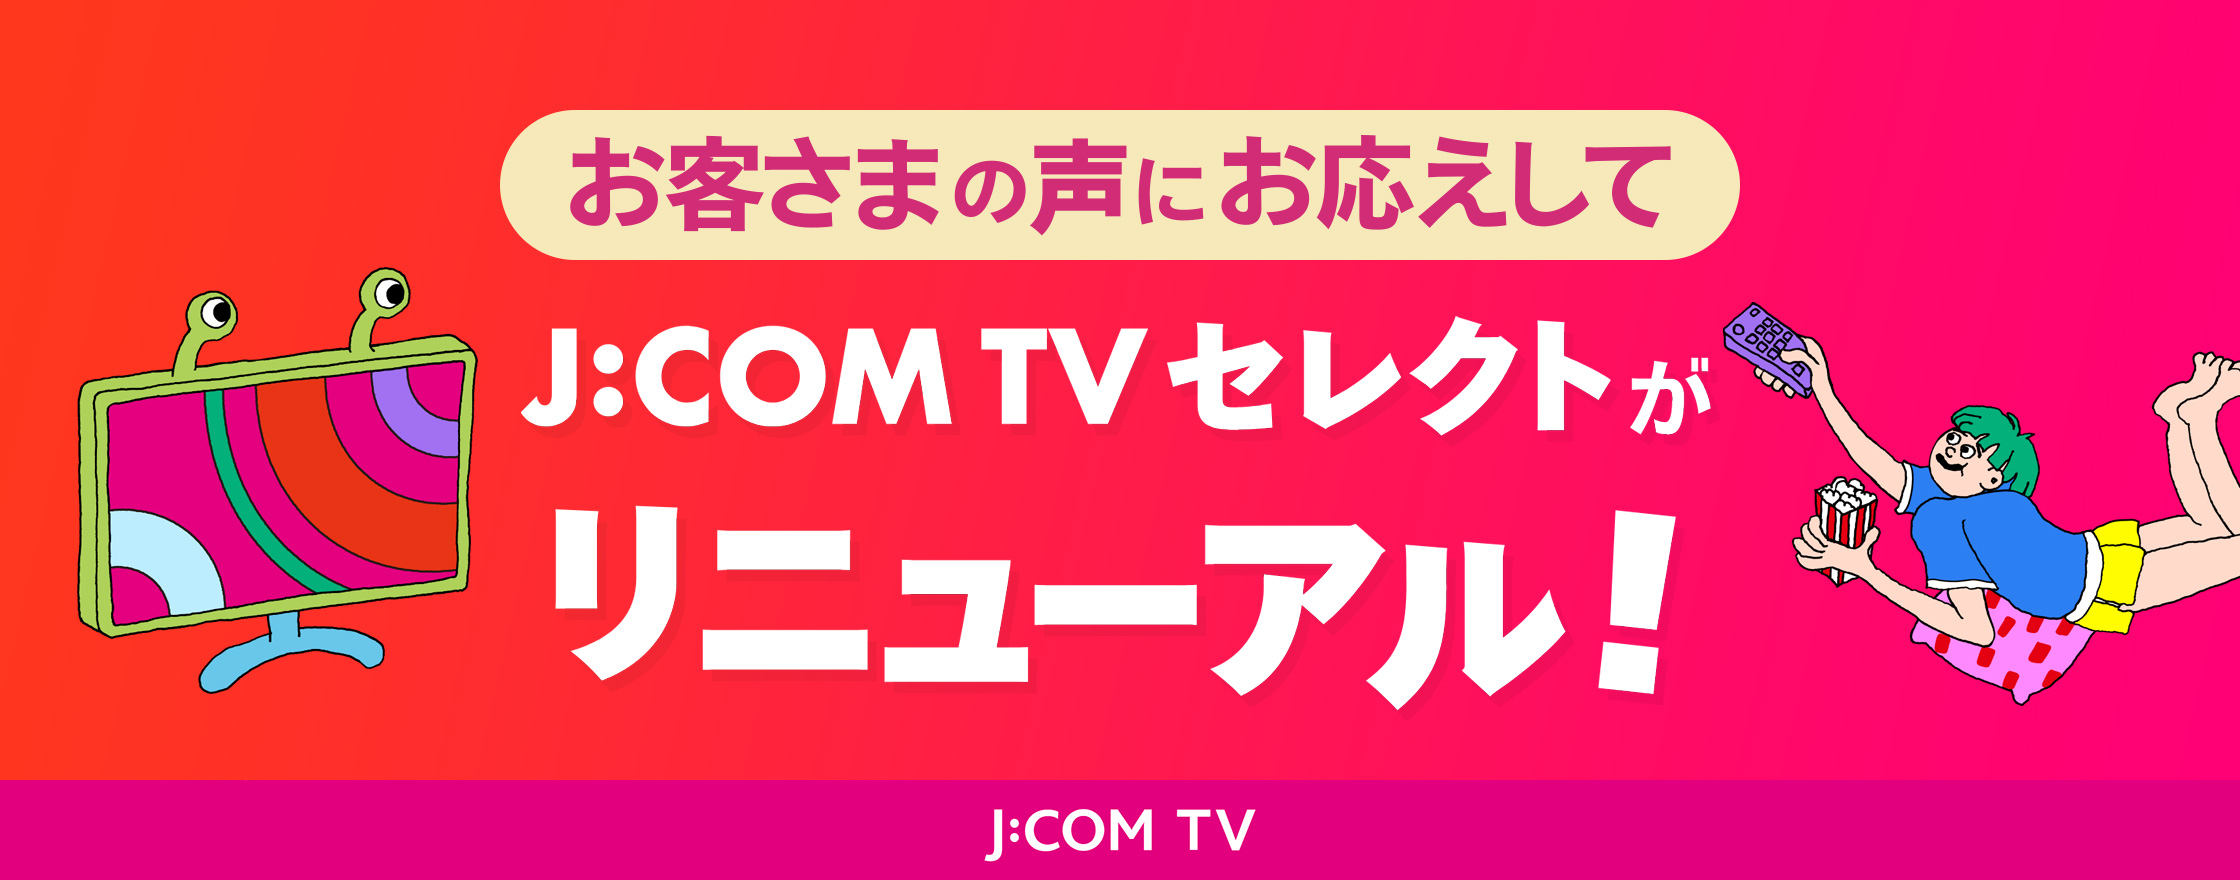 お客様の声にお応えしてJ:COM J:COM TVセレクトがリニューアル！